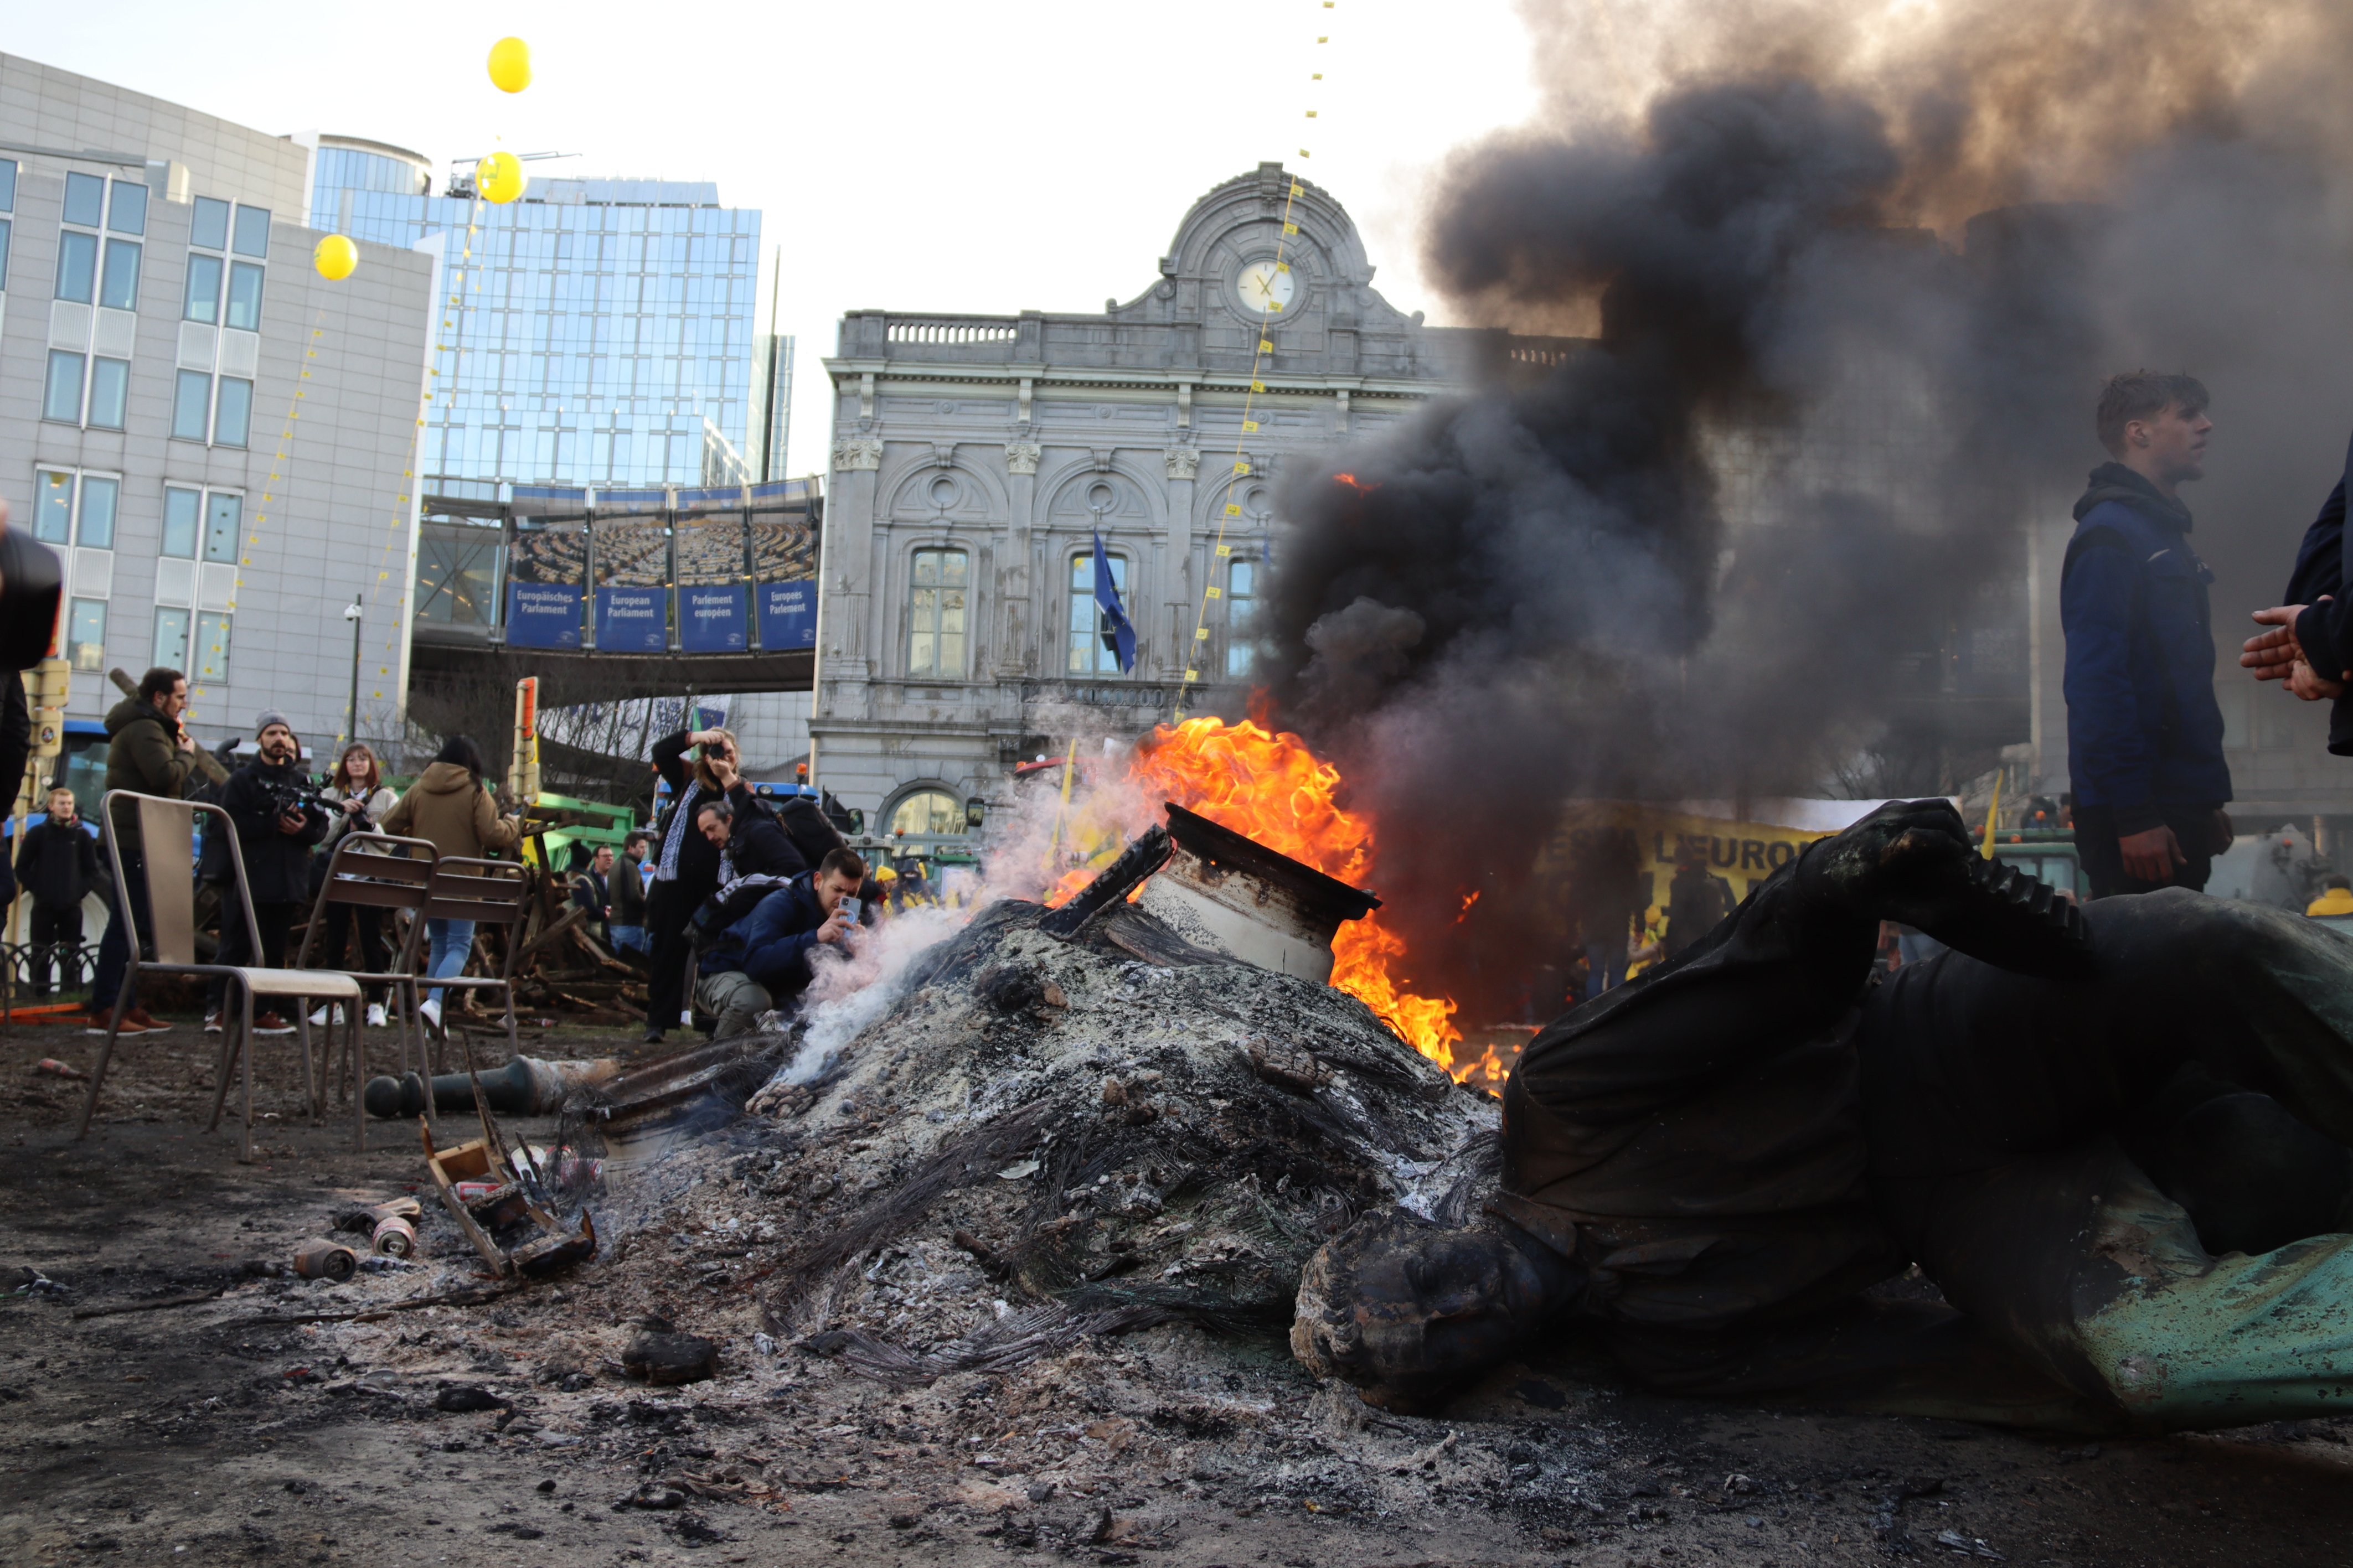 Milers de tractors col·lapsen Brussel·les: pneumàtics cremats i una estàtua enderrocada